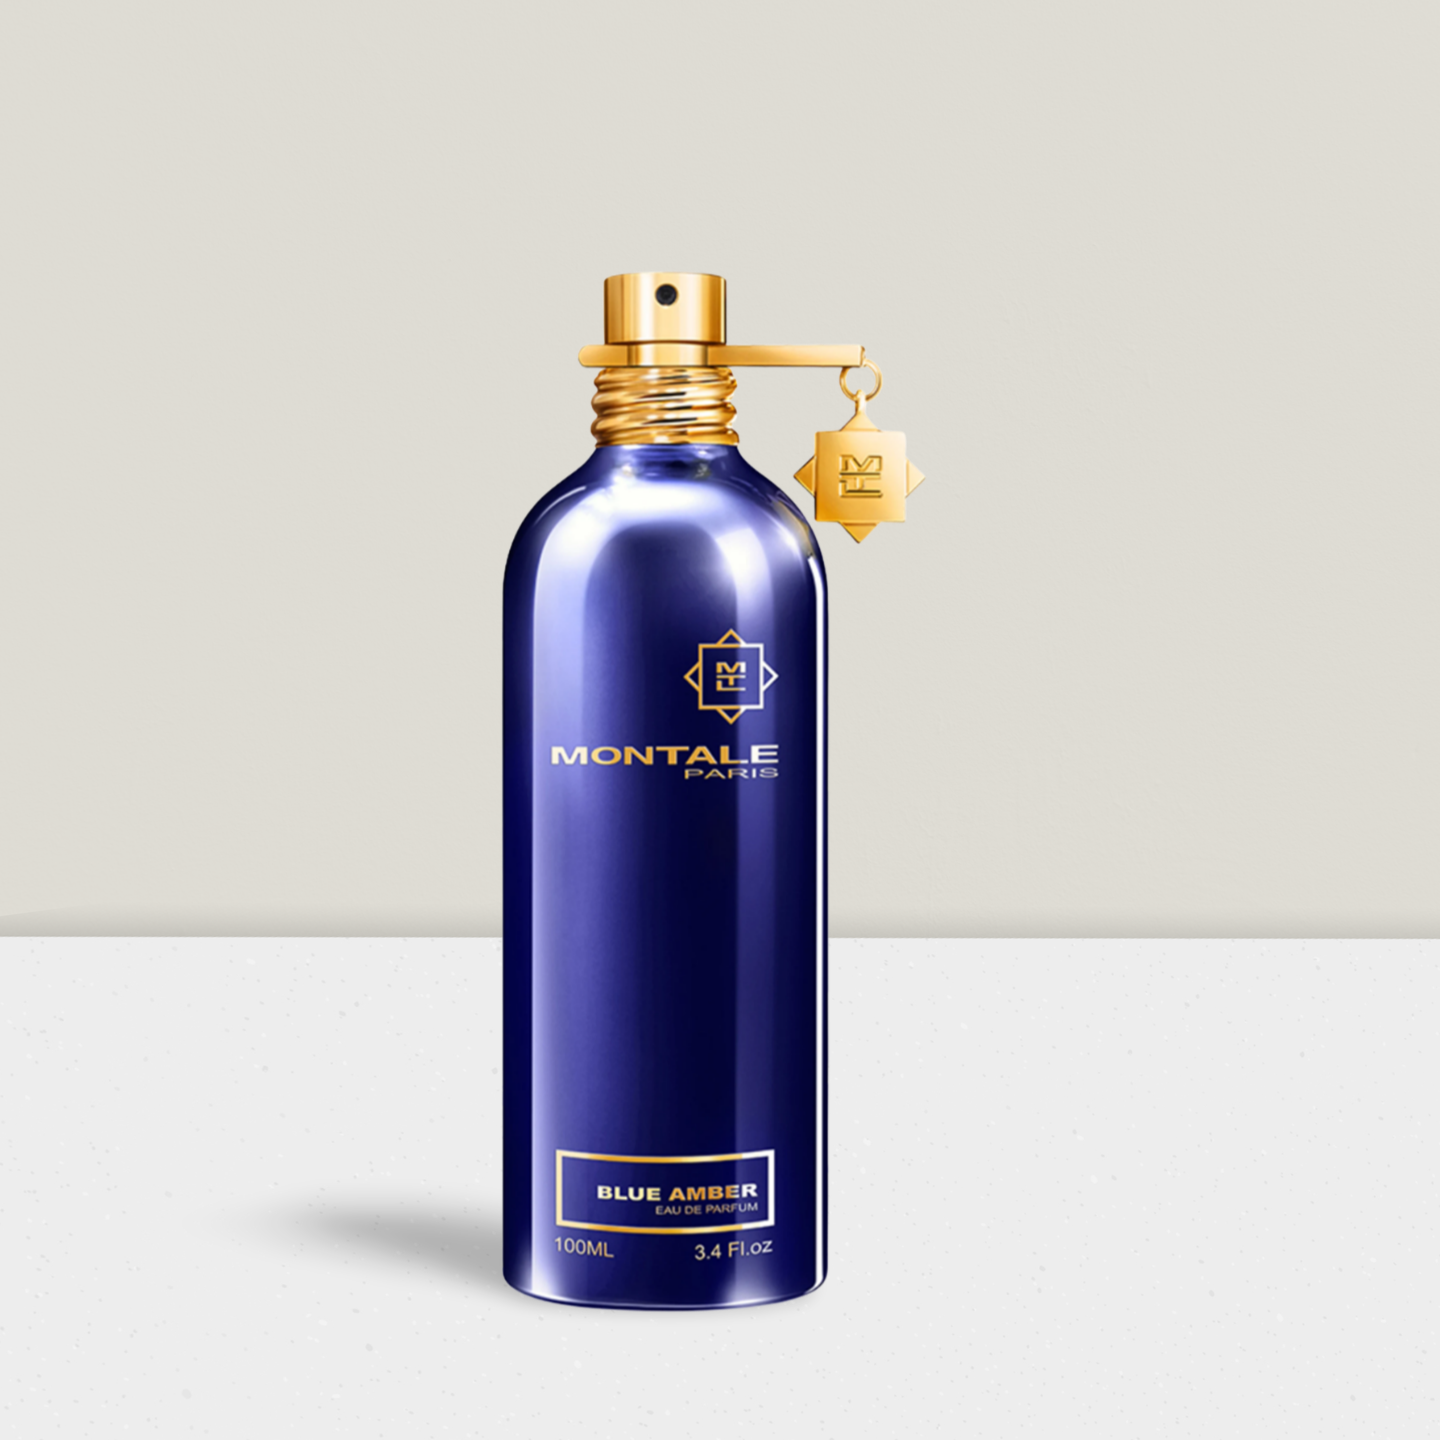 MONTALE - Blue Amber Duftprobe Parfümprobe Abfüllung